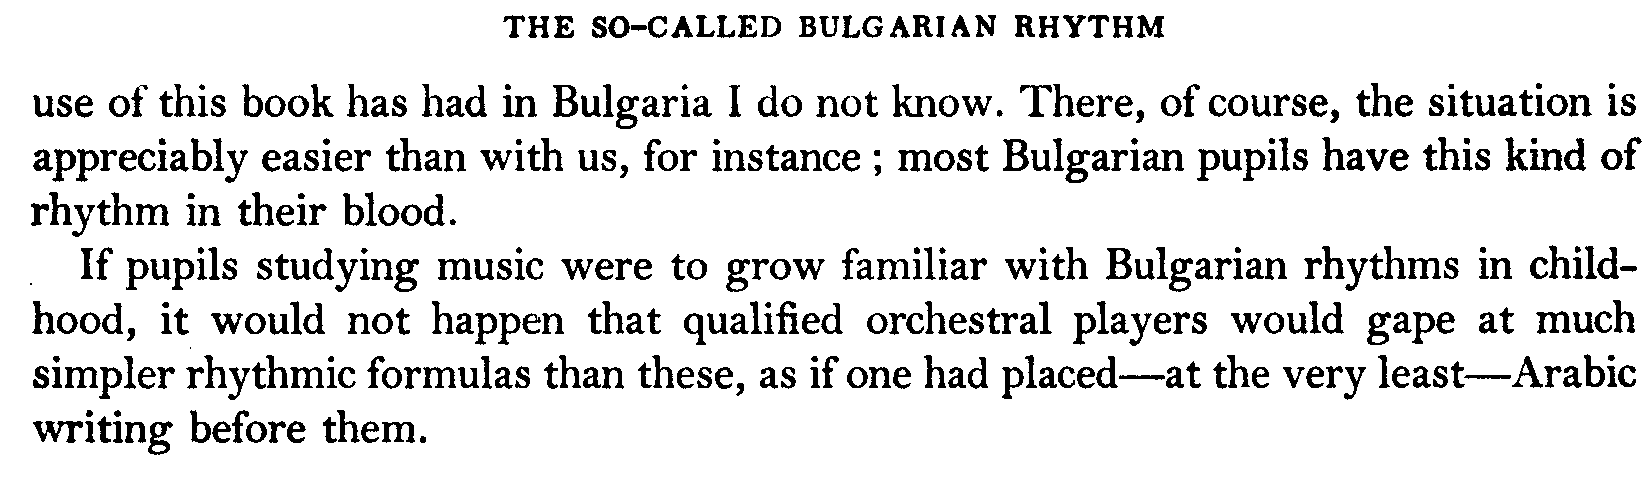 Bulgarian Rhythm - Bartok Page 49